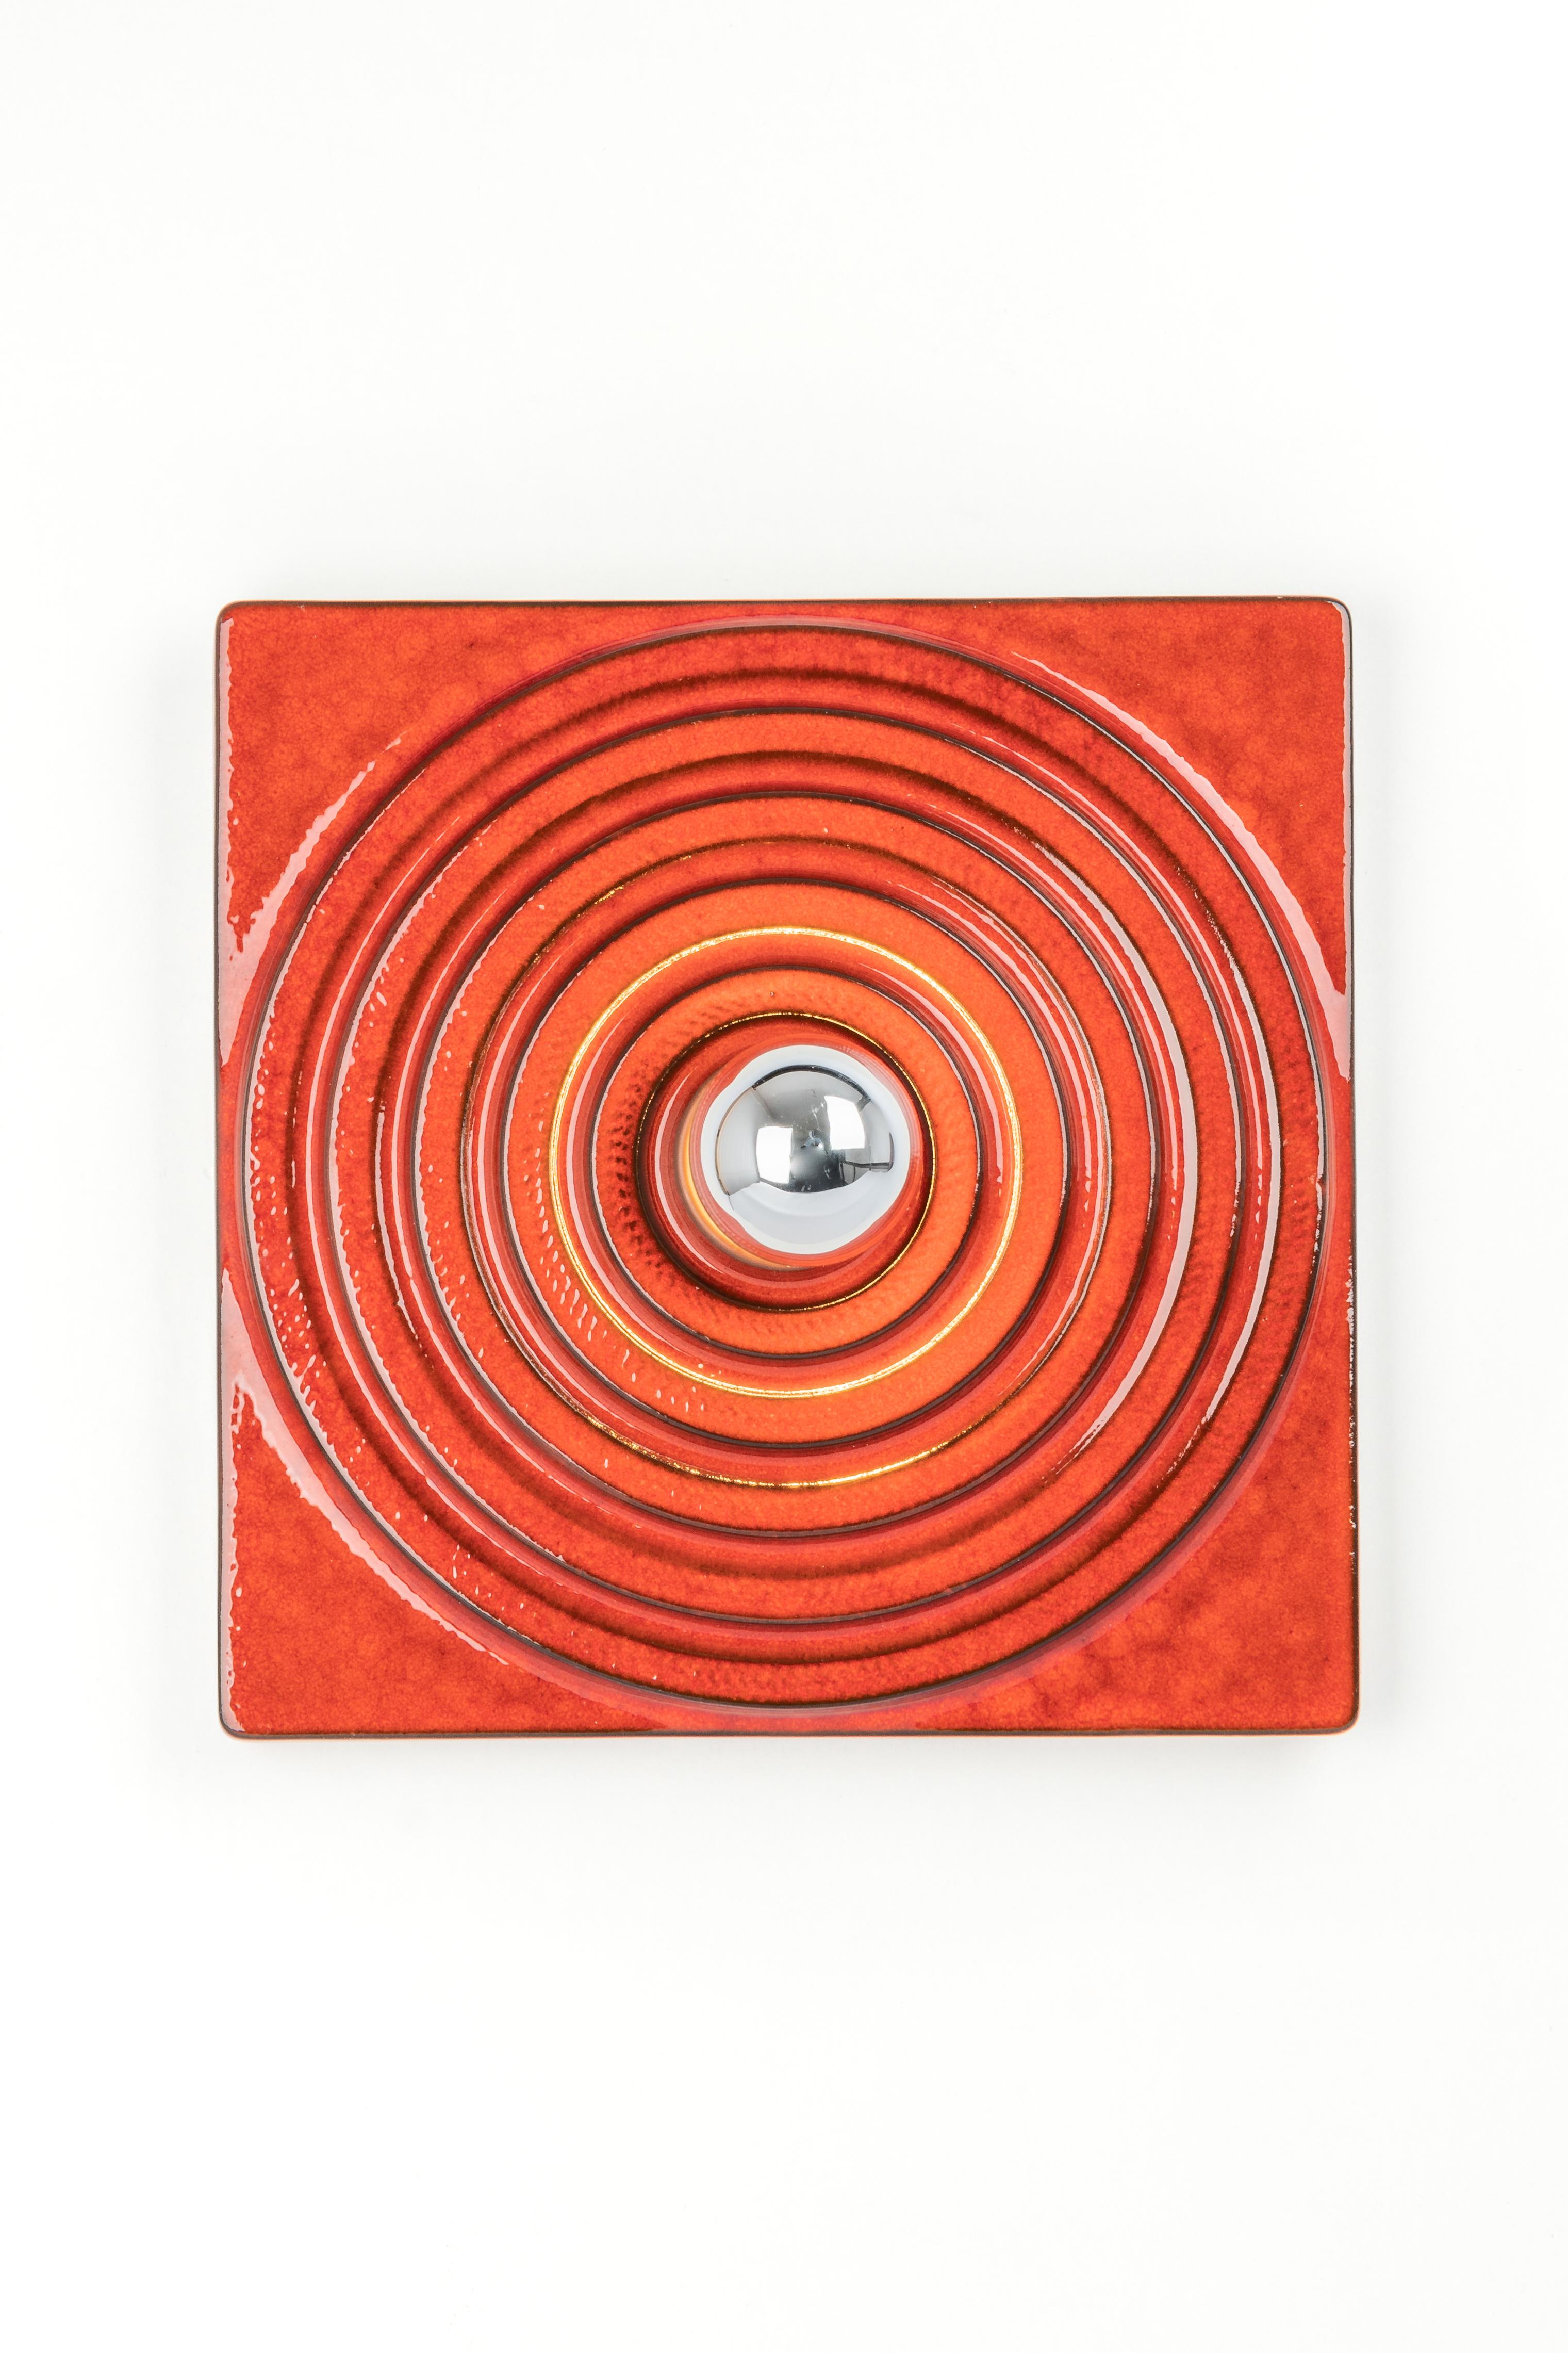 1 de 3 Applique murale rouge en céramique Sputnik, Allemagne, années 1970.
Qualité lourde et en très bon état. Nettoyé, bien câblé et prêt à être utilisé. 

L'applique nécessite 1 ampoule E27 standard de 40W maximum chacune.
Les ampoules ne sont